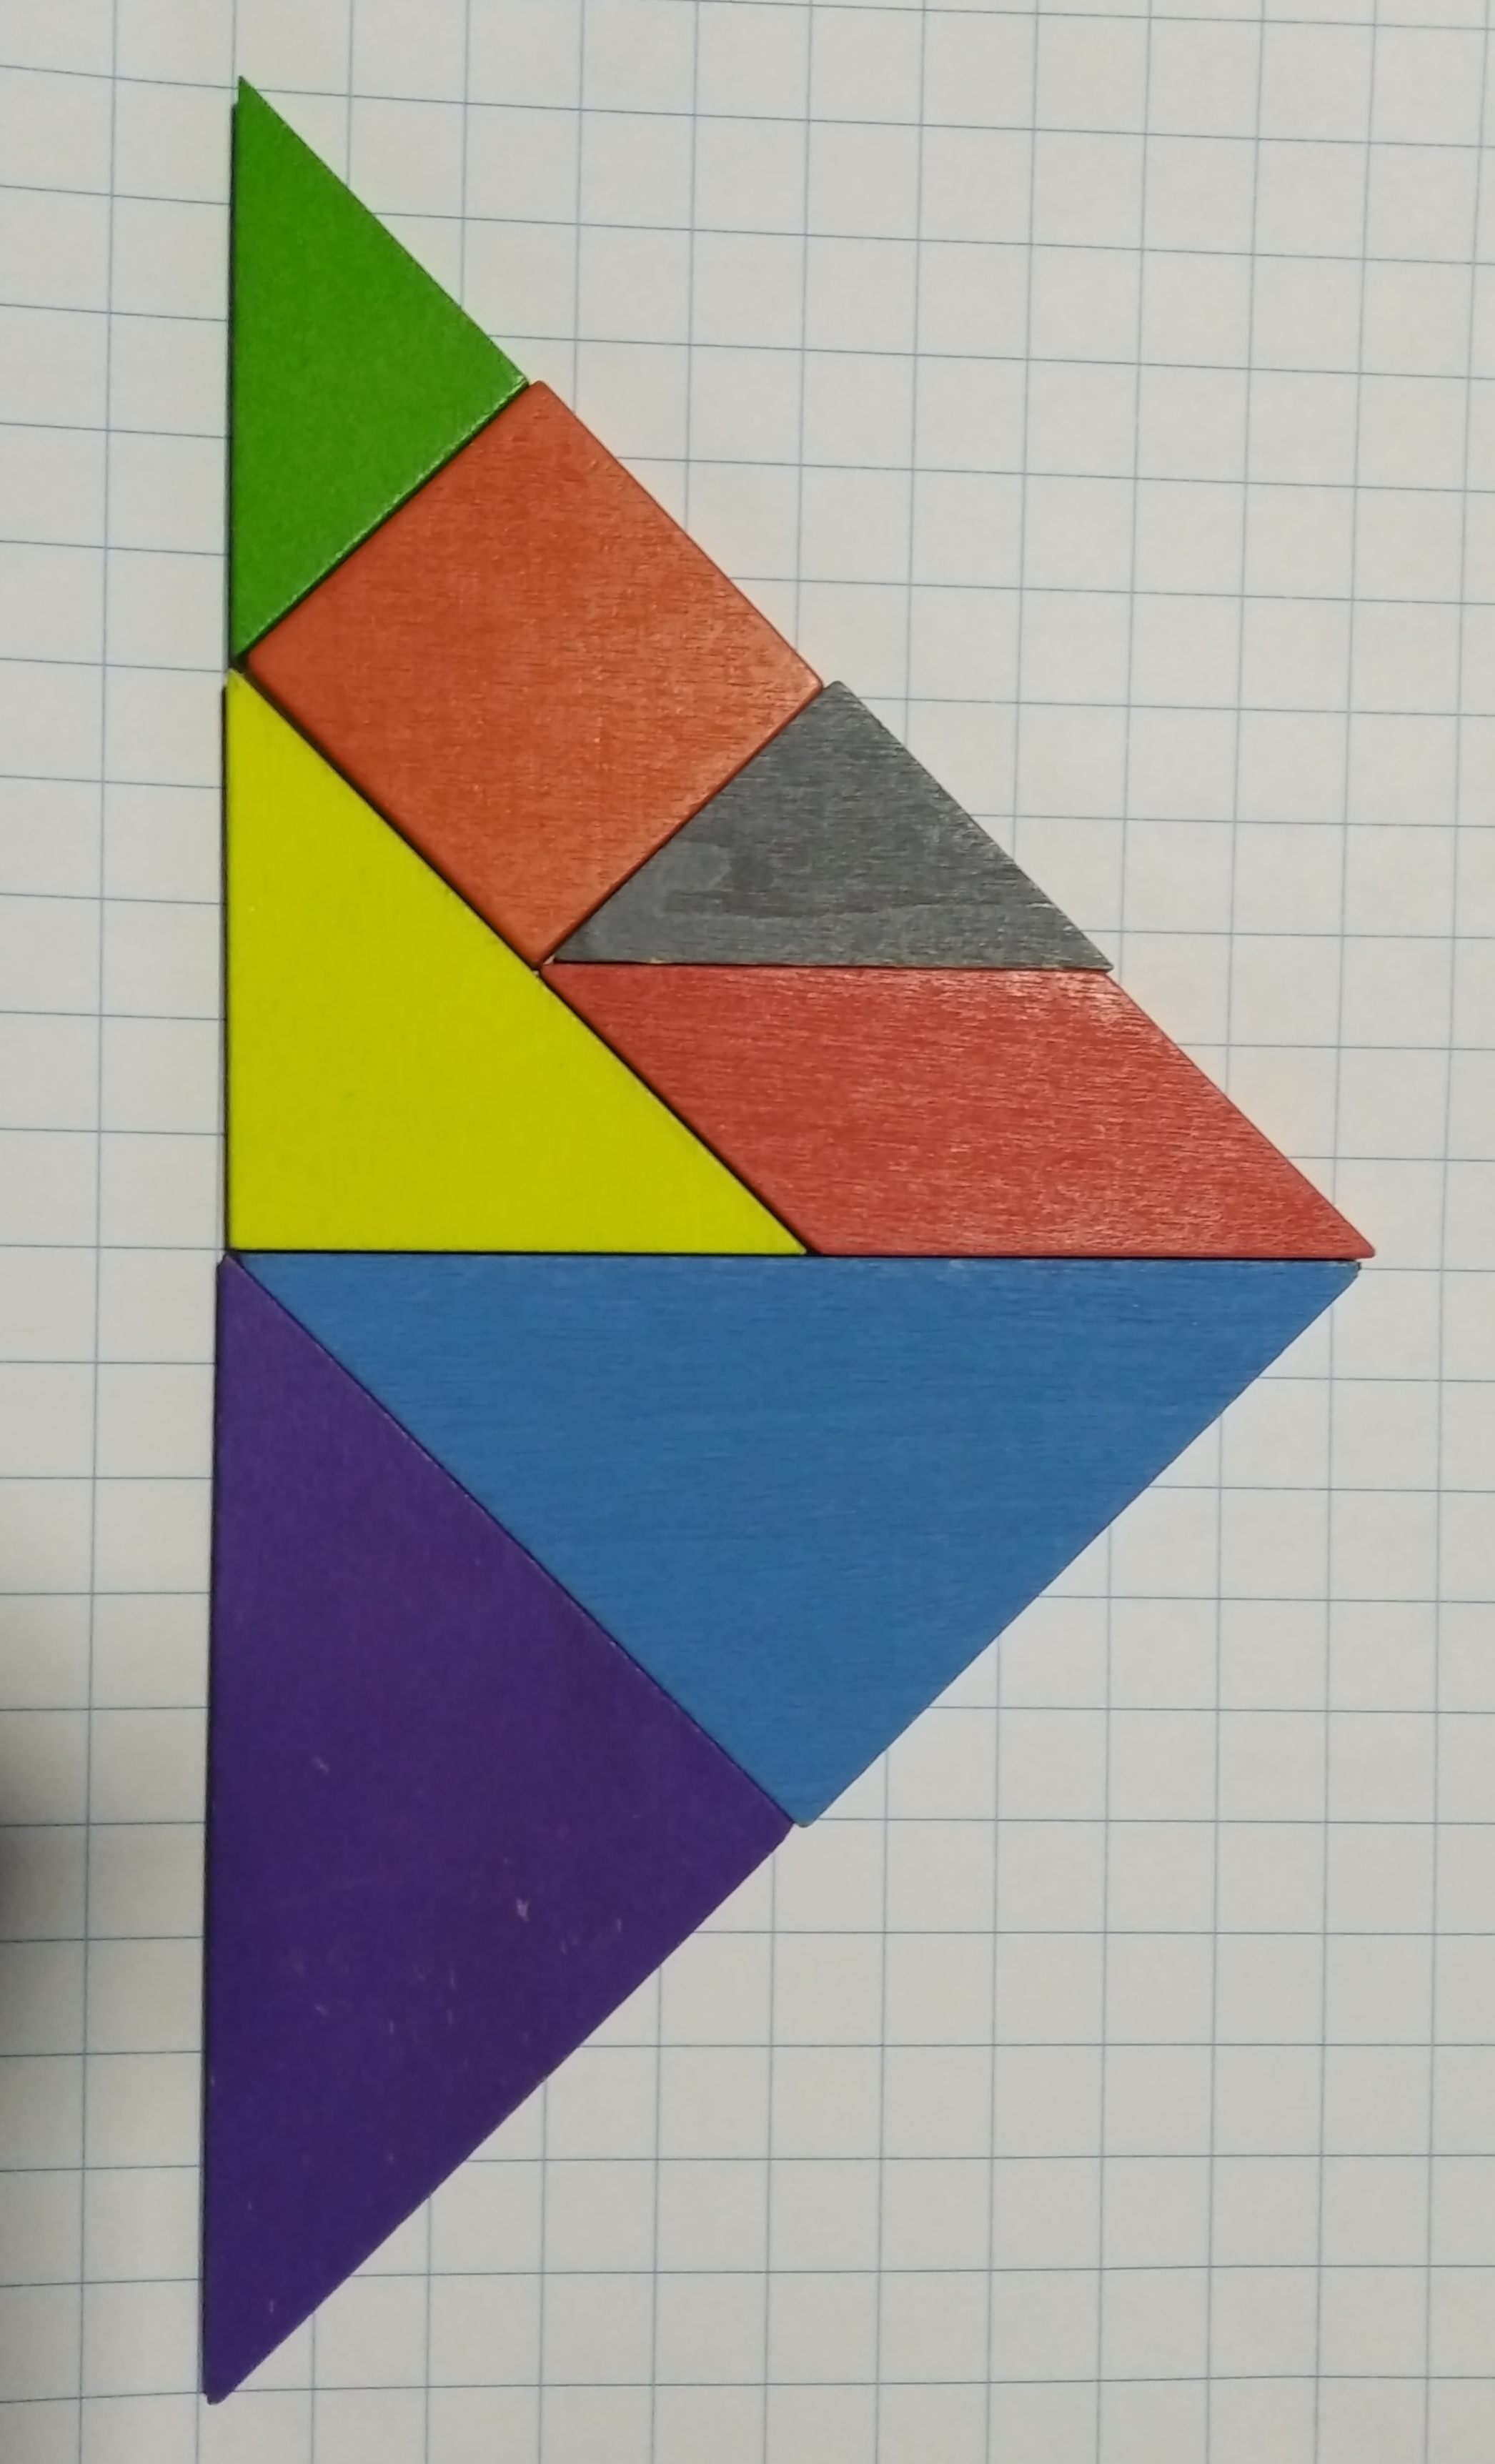 triángulo tangram con 7 piezas